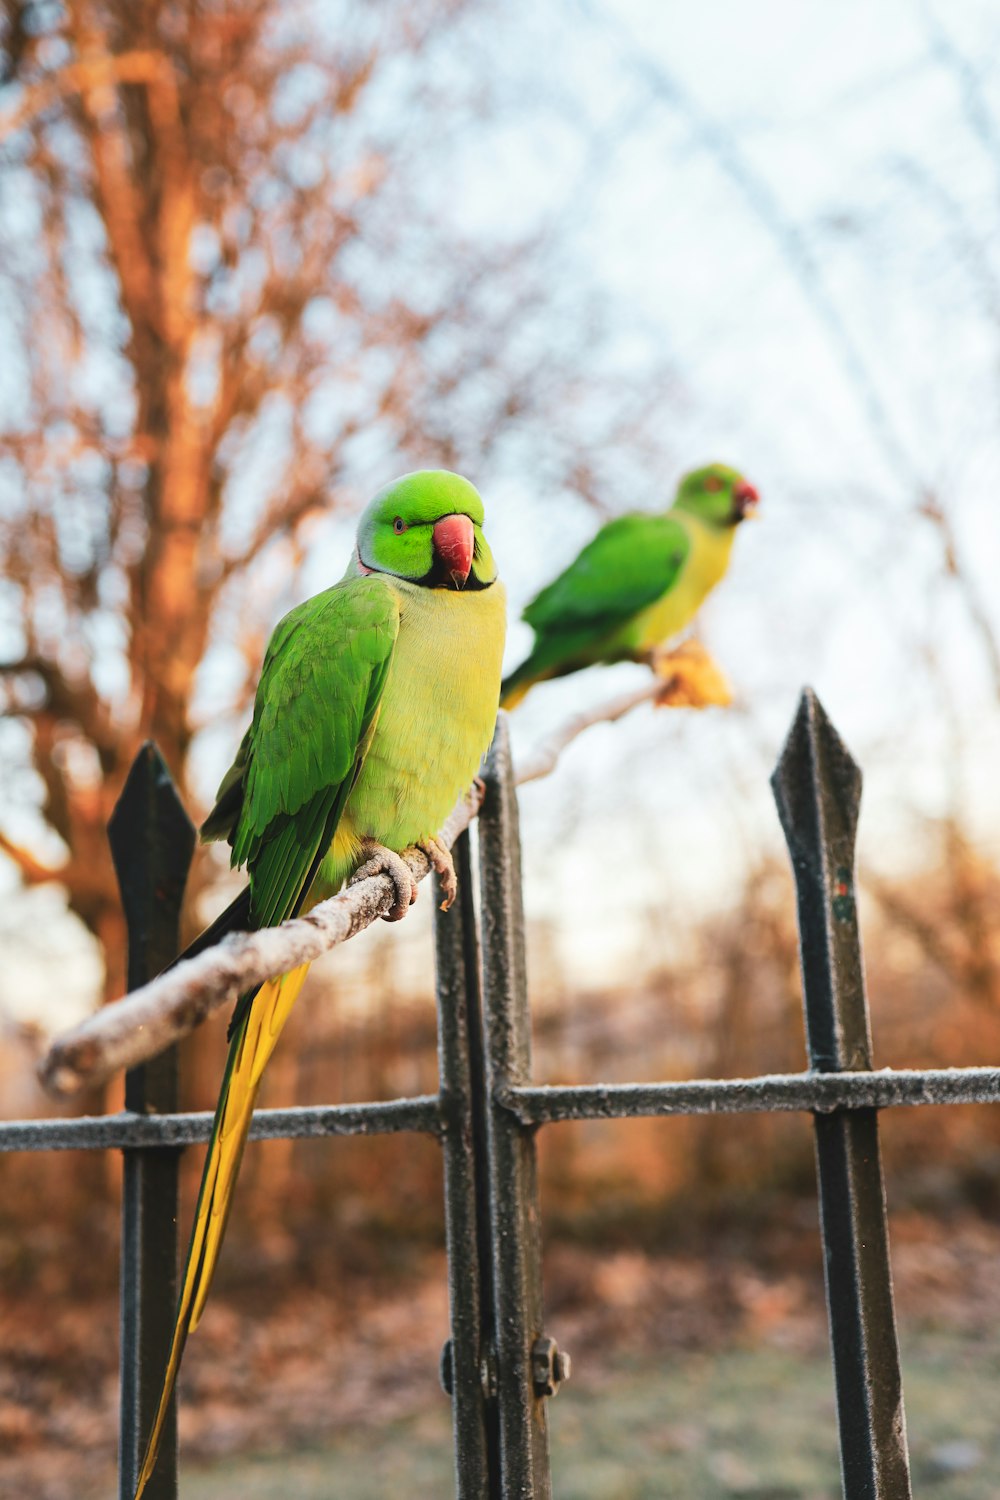 昼間の黒い金属製の柵の上の緑と黄色の鳥